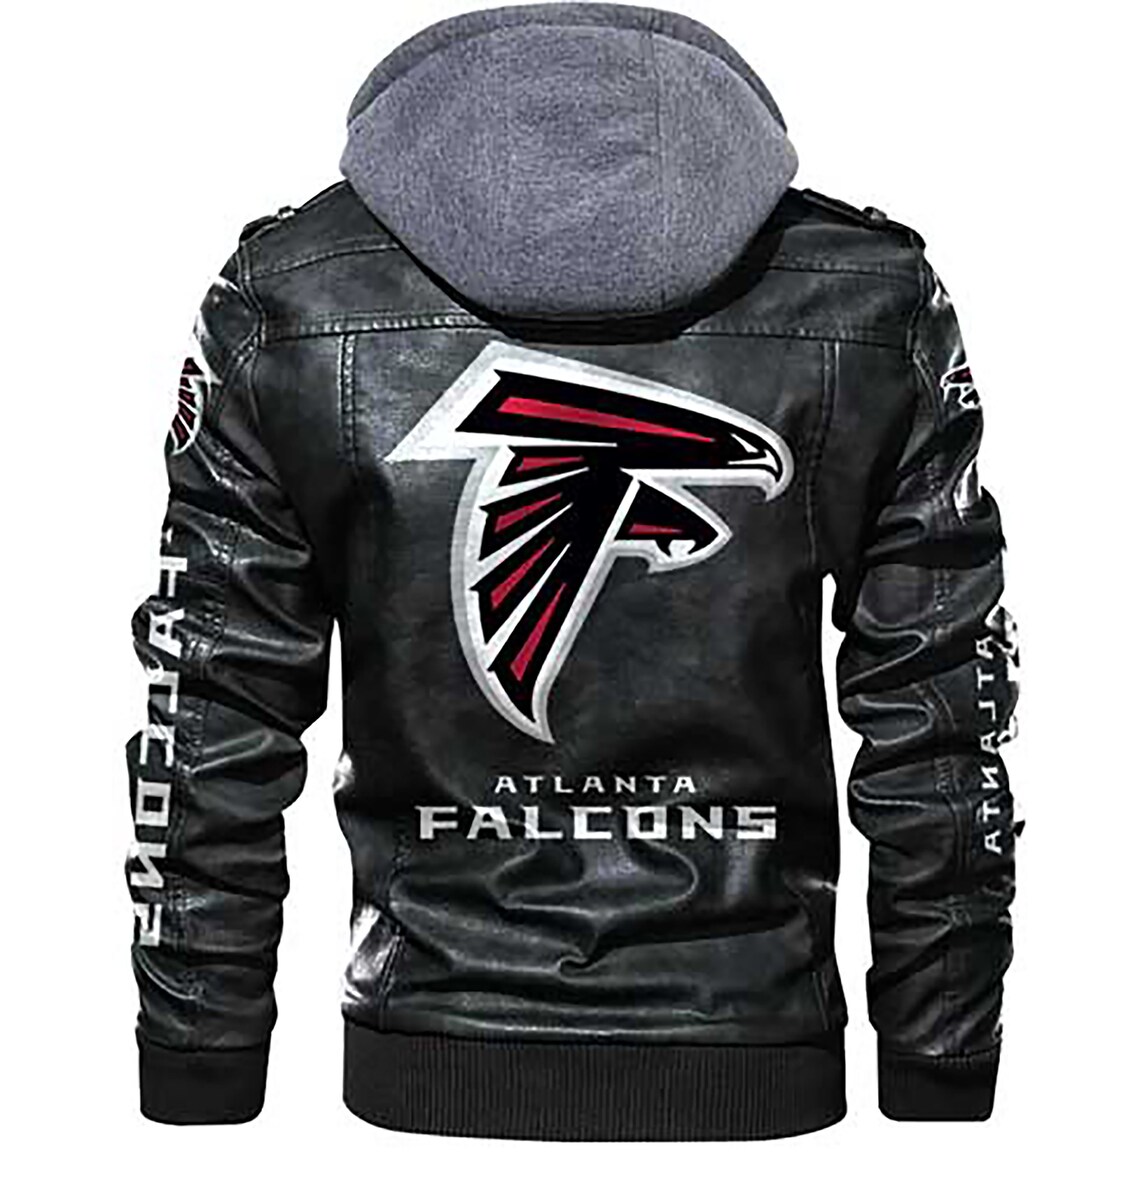 Atlanta Falcons New Men's Women's Leather Jackets | Etsy